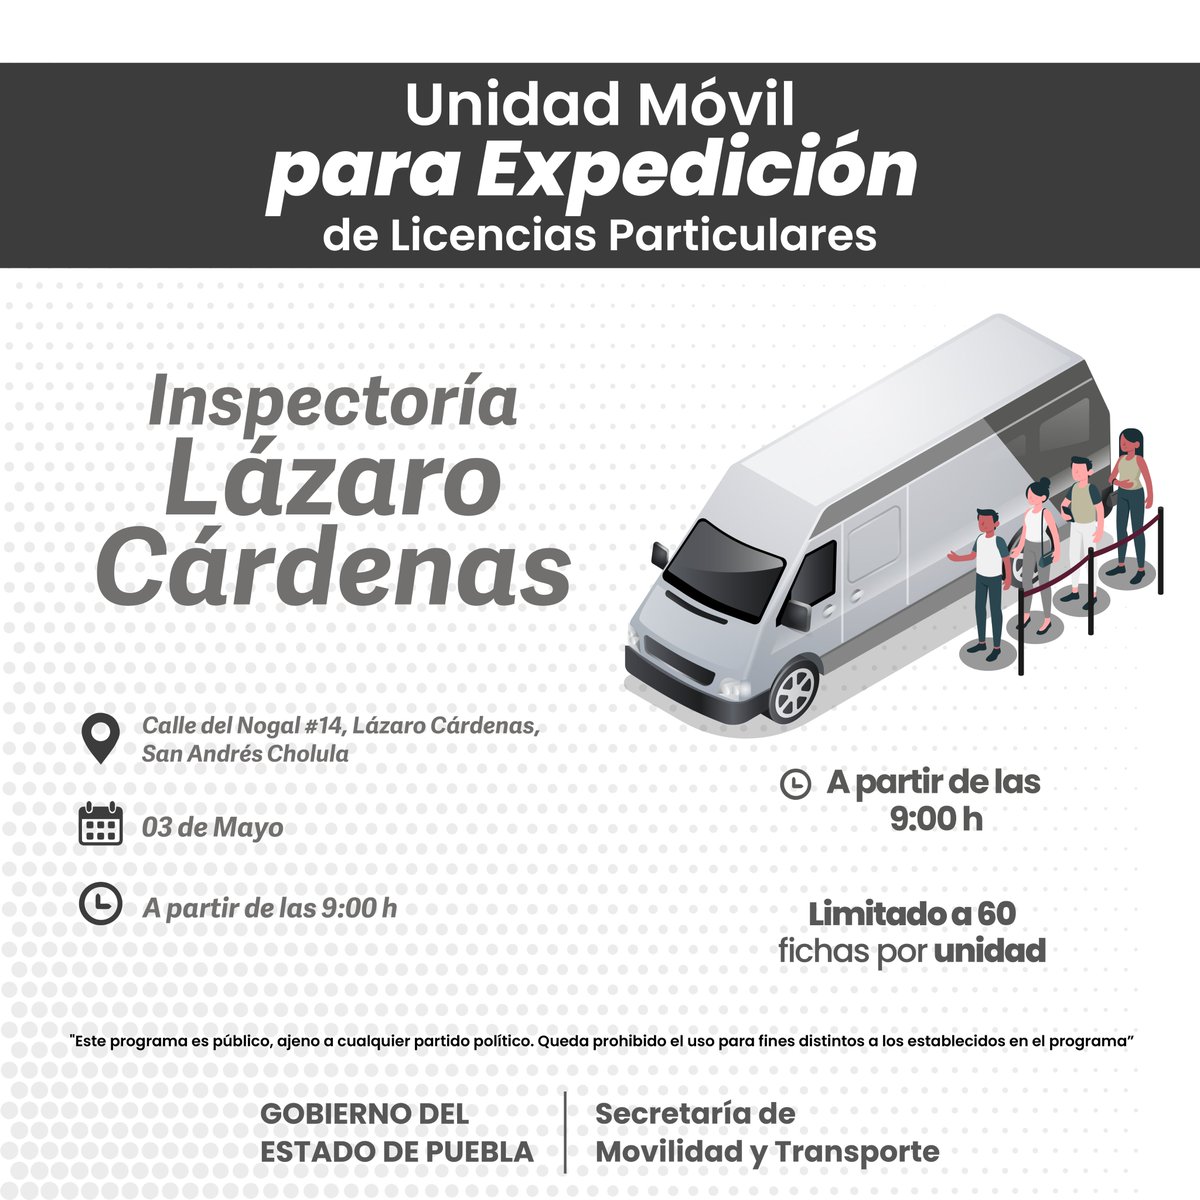 La #UnidadMóvil para la expedición de licencias particulares, hoy se encuentra en la  Universidad Madero y en la Inspectoría Lázaro Cárdenas.

📍Dirección en la imagen
💲🗒️ bit.ly/3Rondel
🕐 A partir de las 9:00